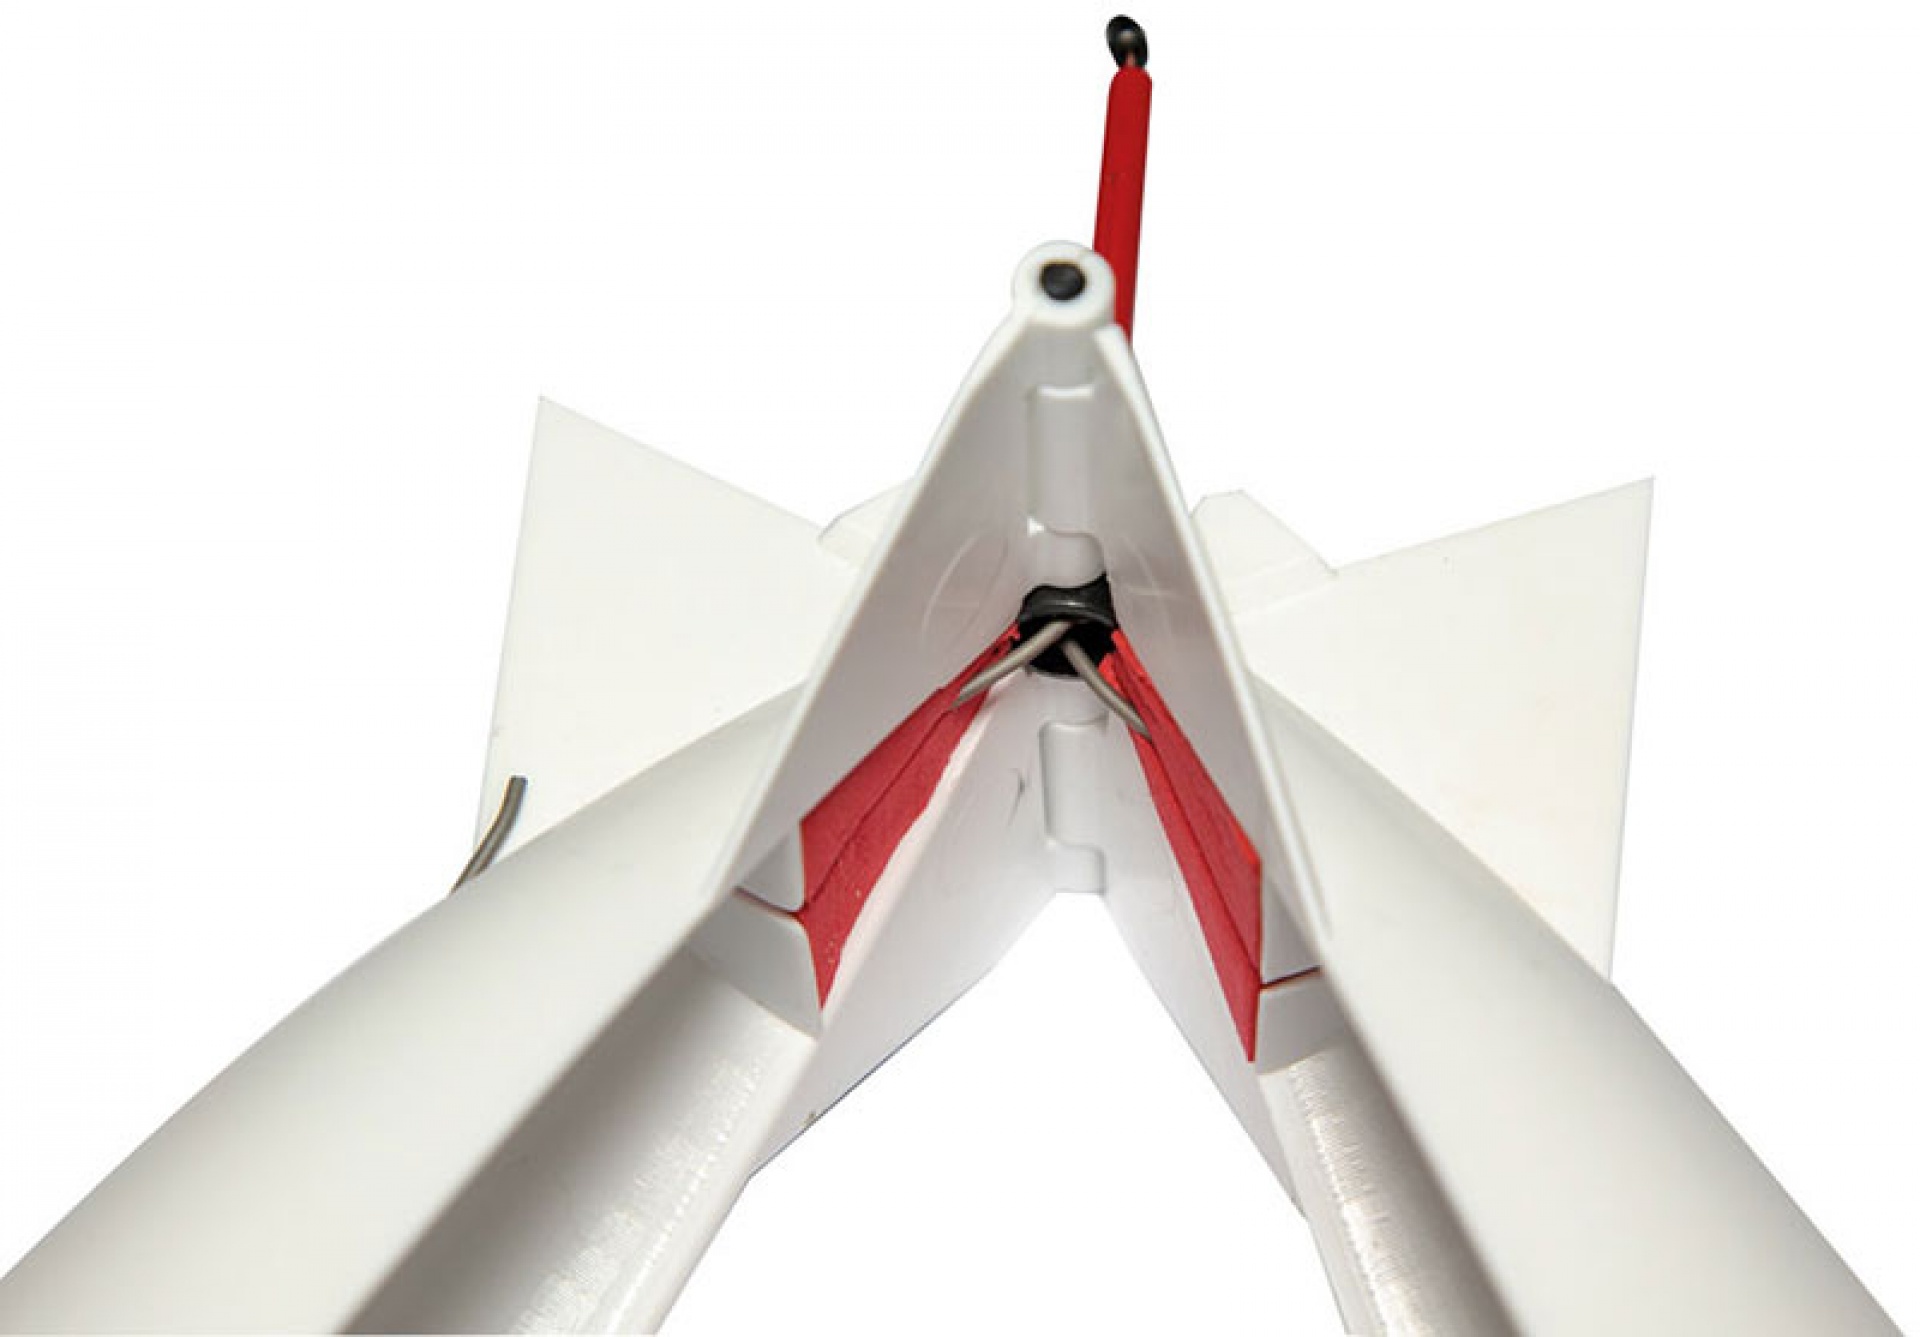 SPOMB Midi X - Pop-up Rocket